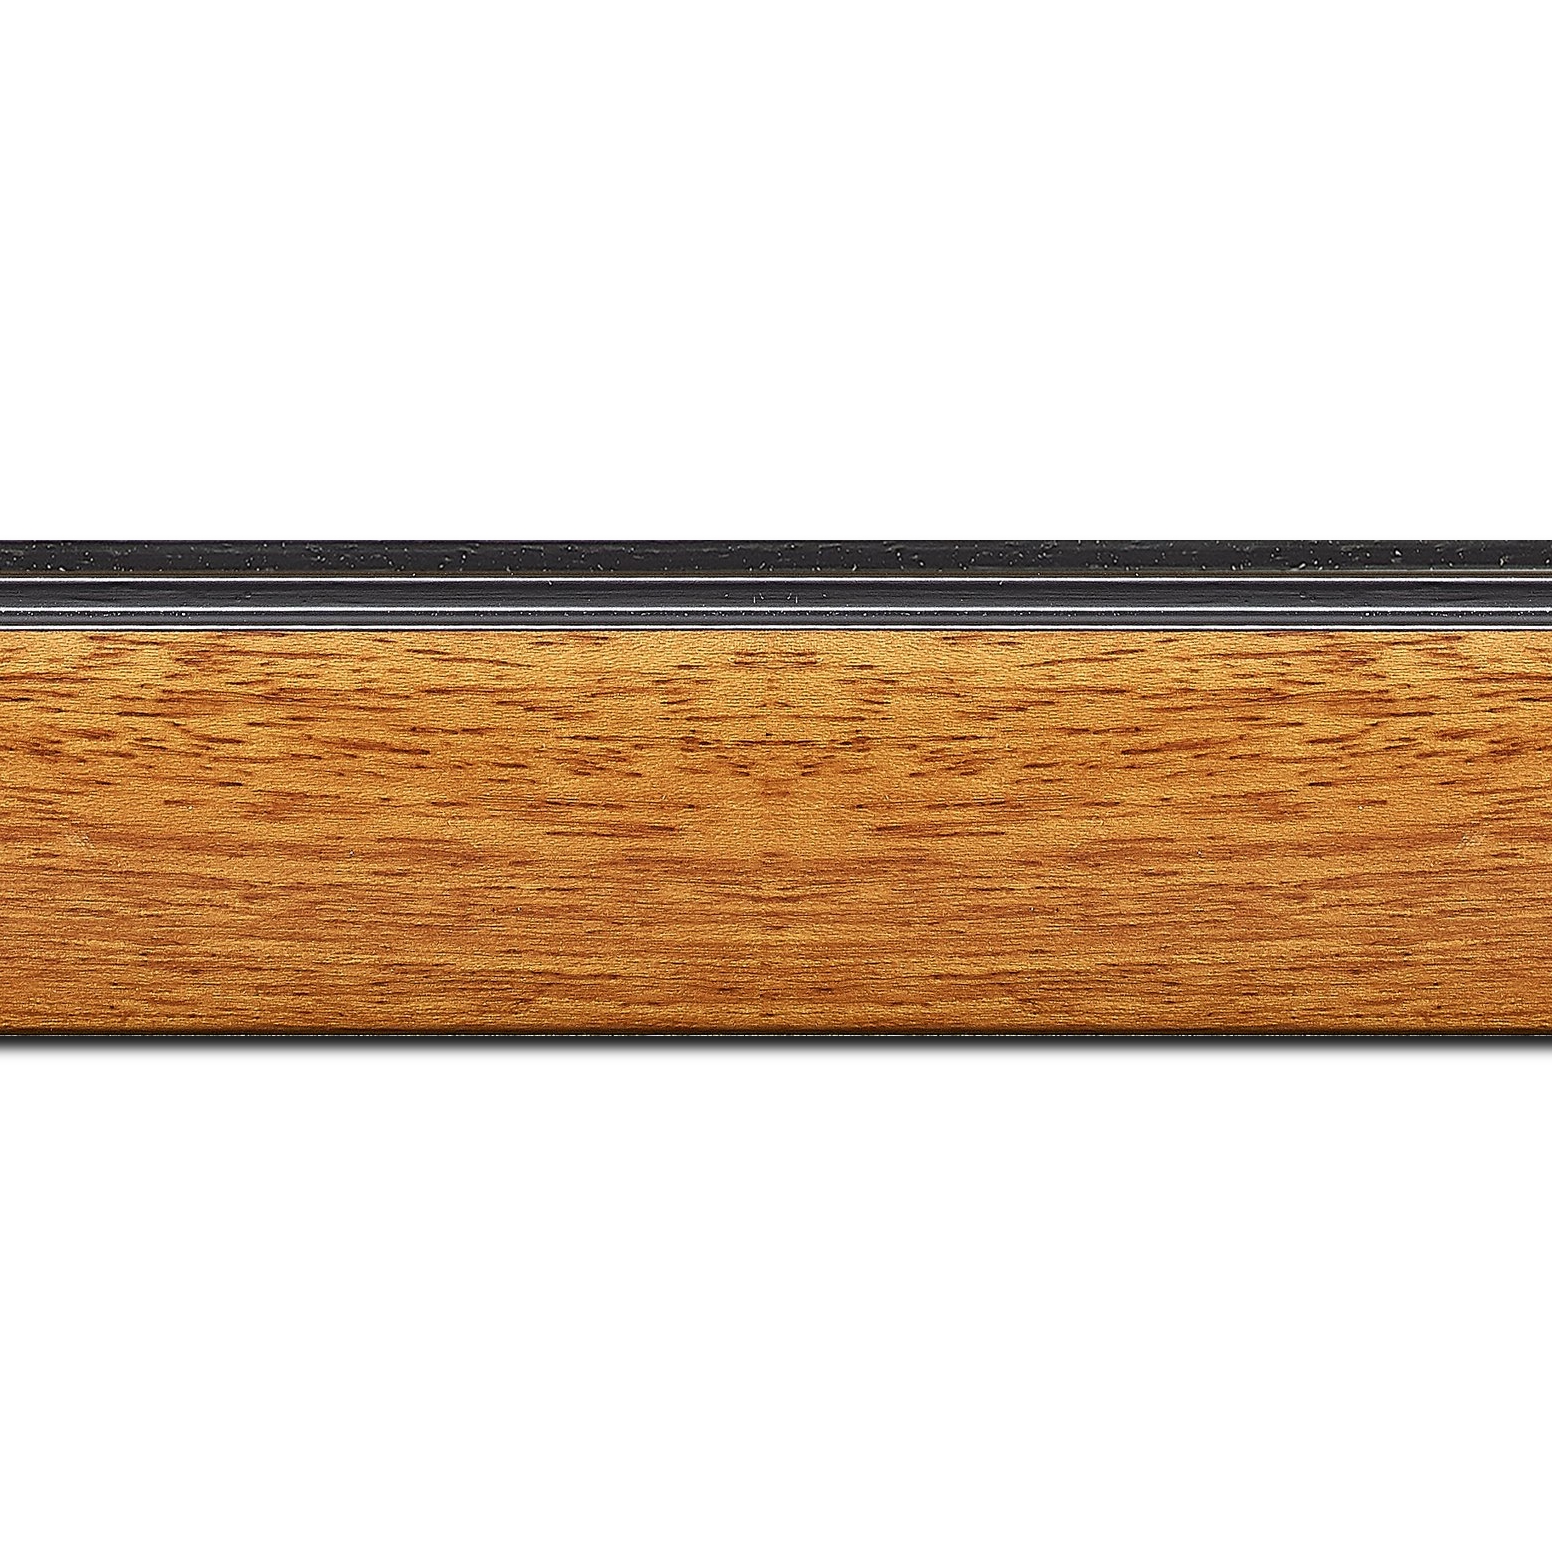 Pack par 12m, bois profil en pente méplat largeur 4.8cm couleur merisier satiné surligné par une gorge extérieure noire : originalité et élégance assurée (longueur baguette pouvant varier entre 2.40m et 3m selon arrivage des bois)